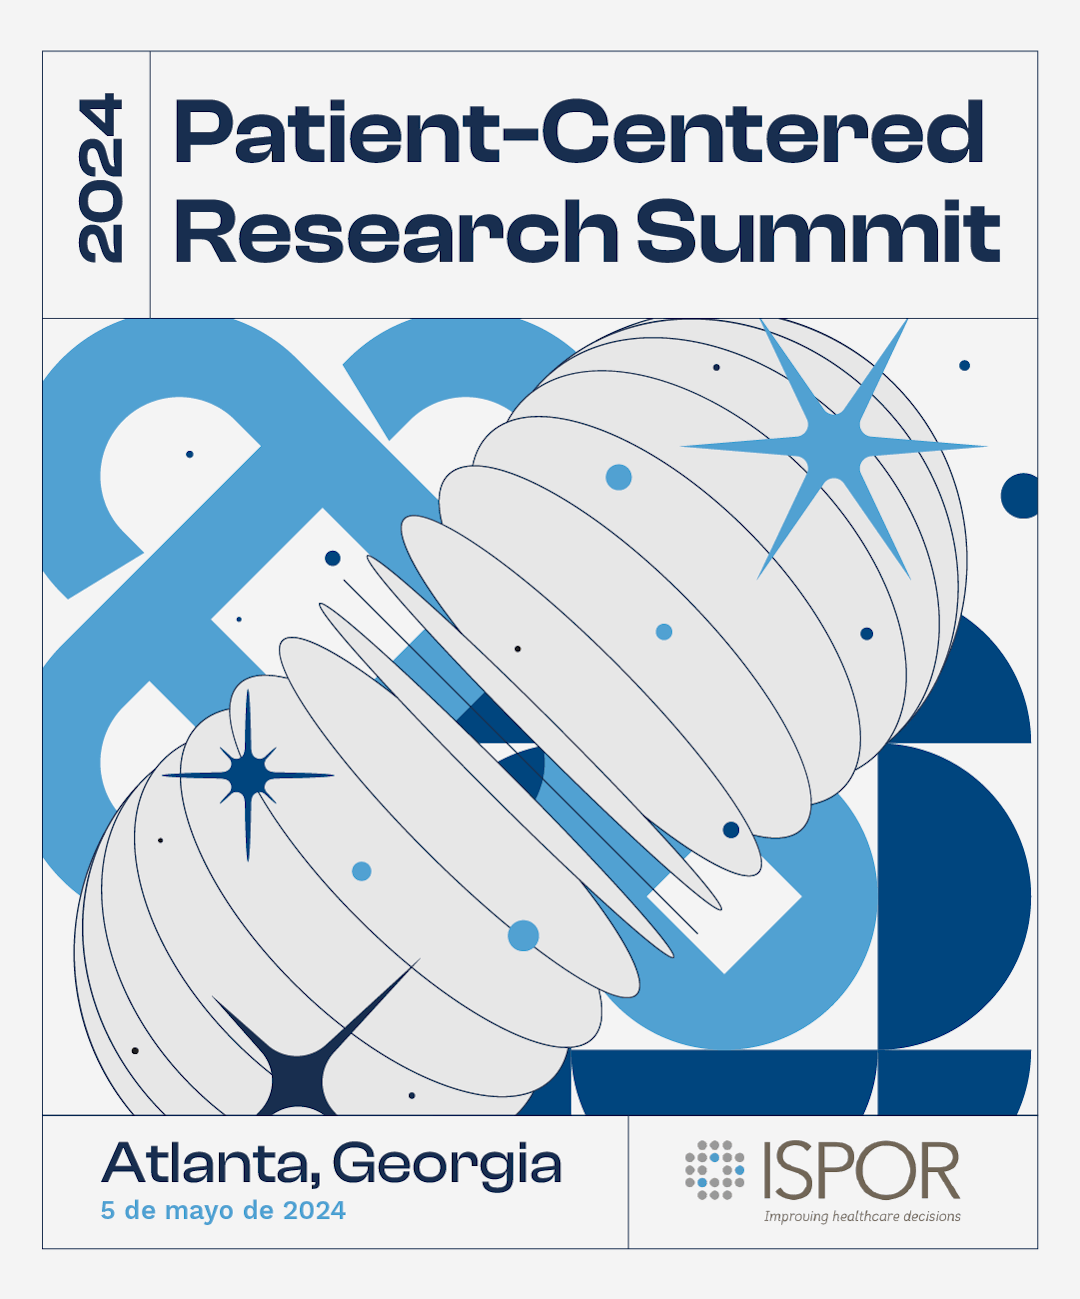 Cumbre de Investigación Centrada en el Paciente de ISPOR 2024